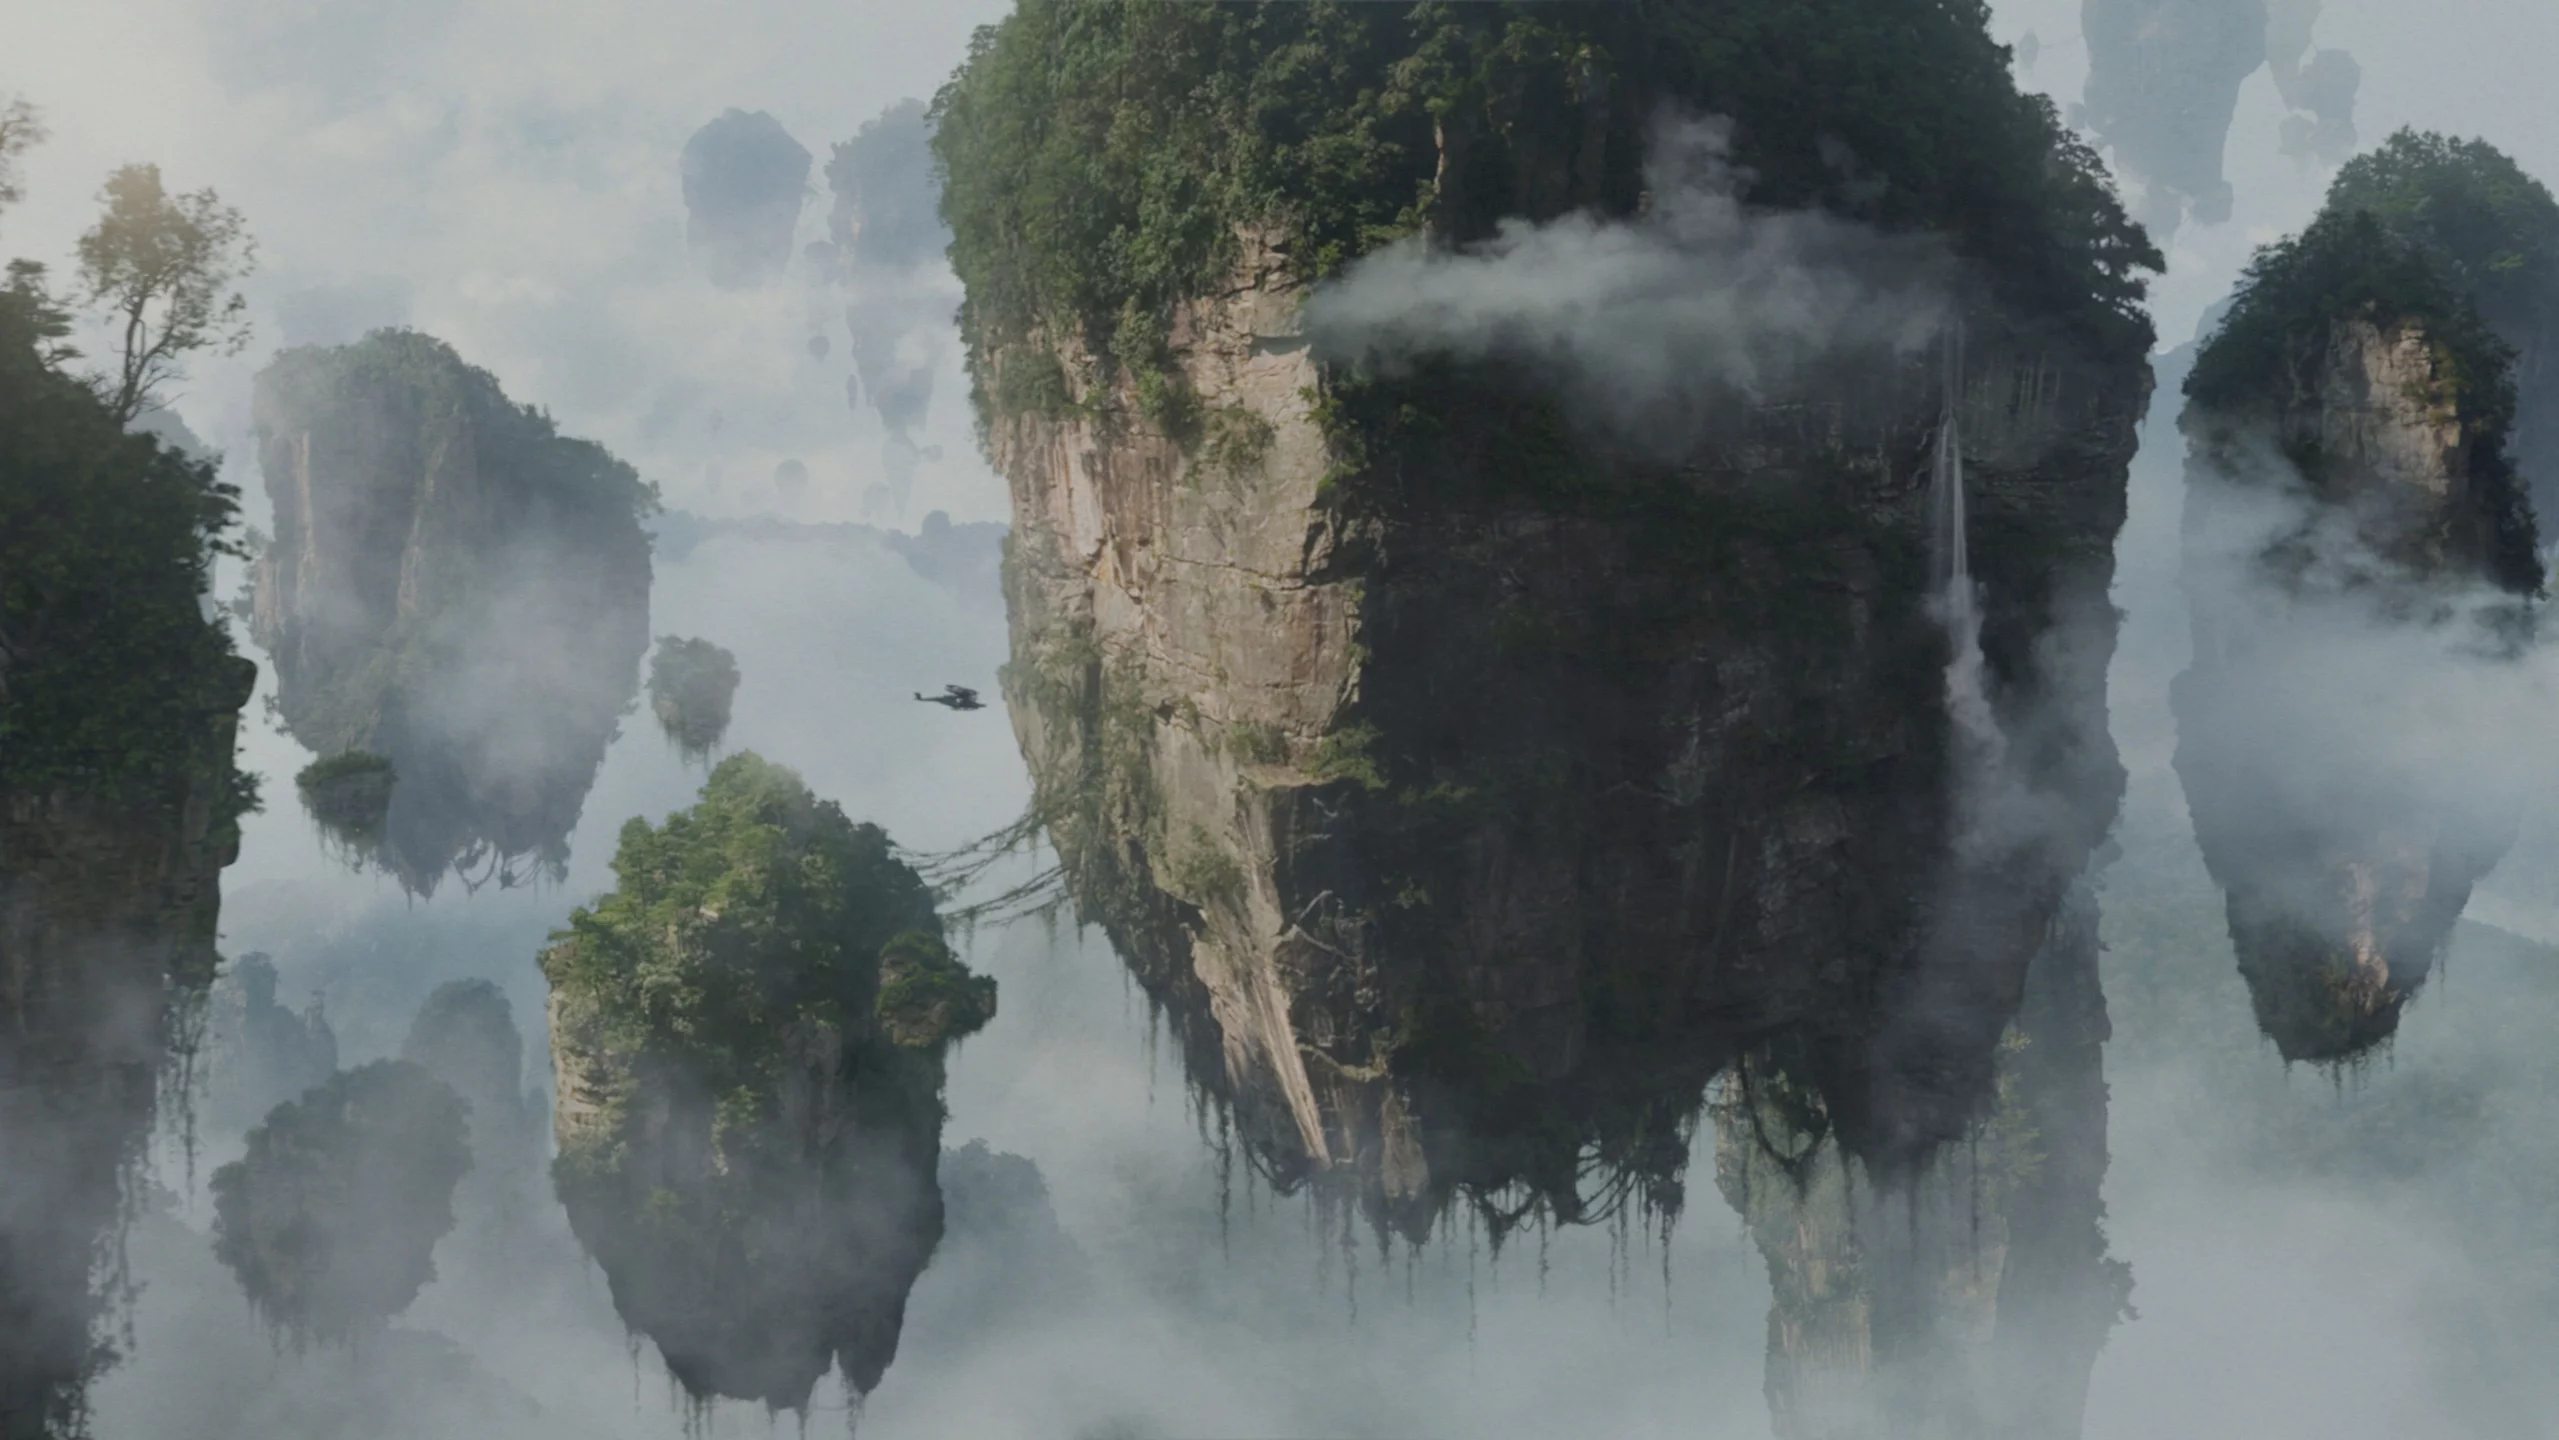 Photo du film : Avatar